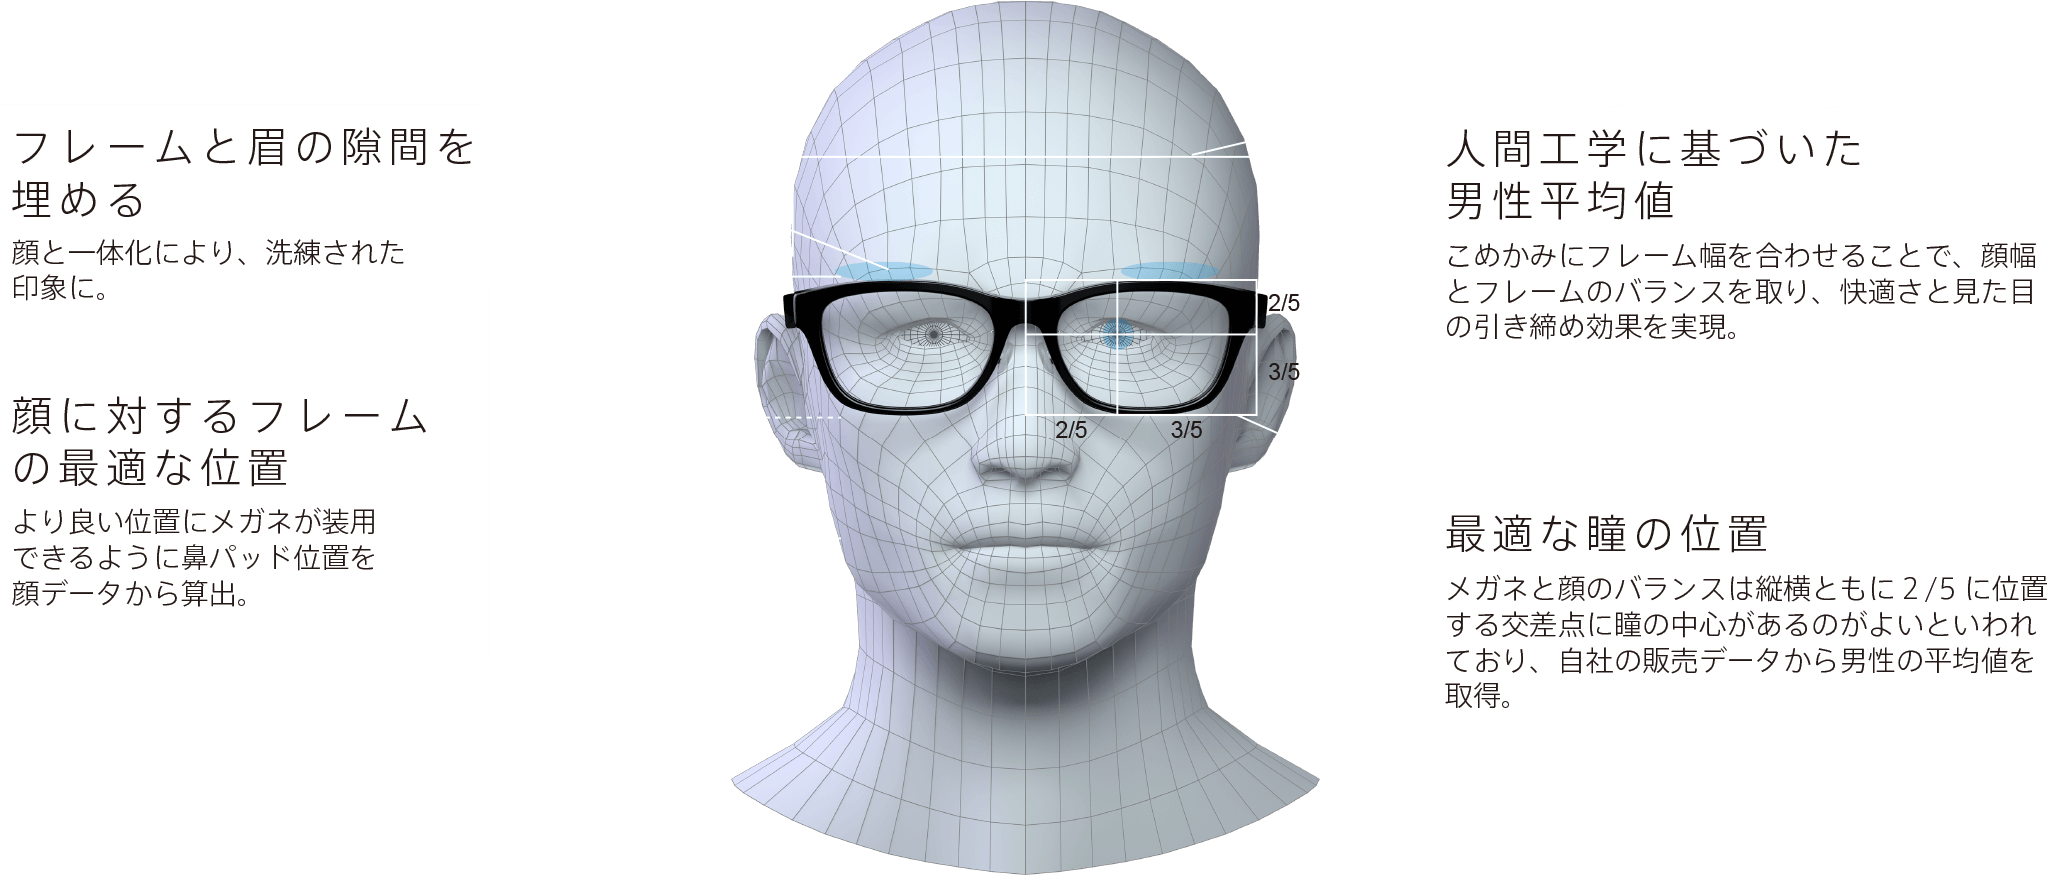 フレームと眉の隙間を埋める: 顔と一体化により、洗練された印象に。 / 顔に対するフレームの最適な位置: より良い位置にメガネが装用できるように鼻パッド位置を顔データから算出。 / 人間工学に基づいた男性平均値: こめかみにフレーム幅を合わせることで、顔幅とフレームのバランスを取り、快適さと見た目の引き締め効果を実現。 / 最適な瞳の位置: メガネと顔のバランスは縦横ともに２/5に位置する交差点に瞳の中心があるのがよいといわれており、自社の販売データから男性の平均値を取得。